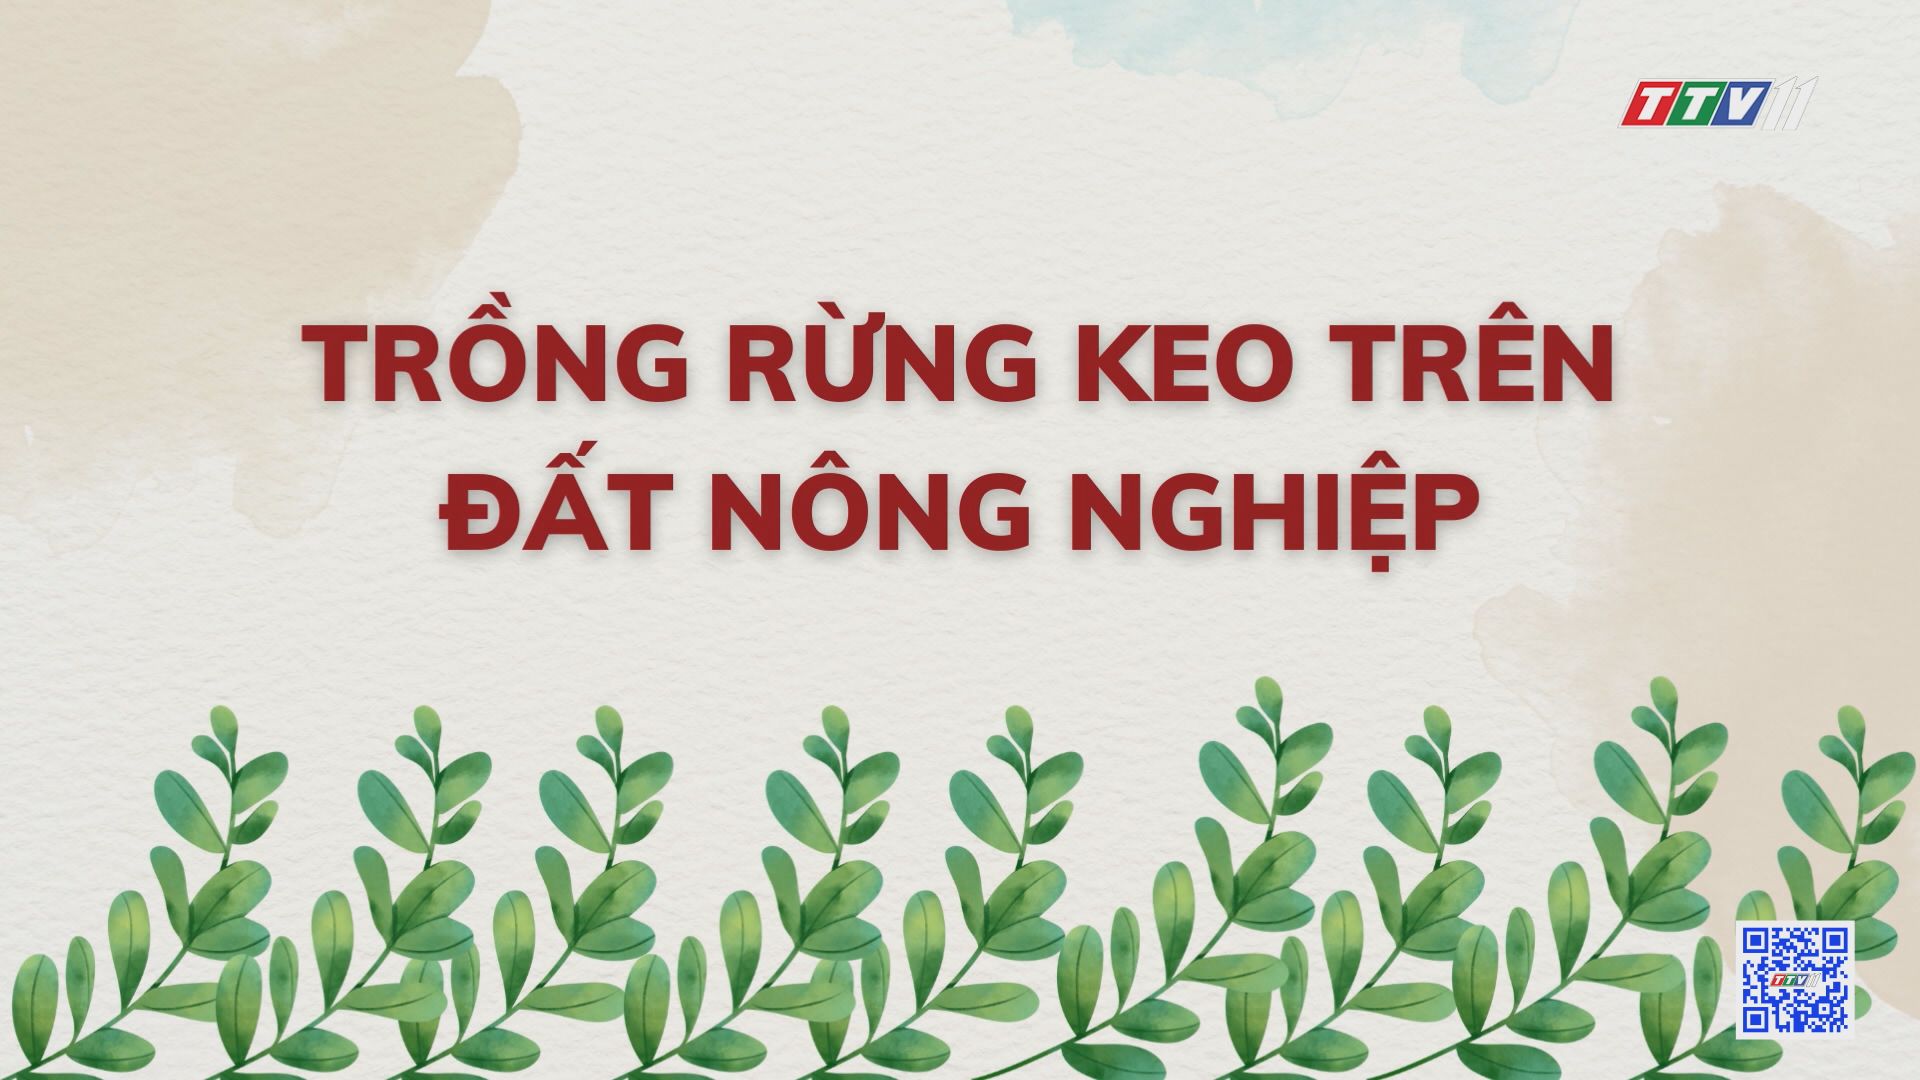 Trồng rừng keo trên đất nông nghiệp | Nông nghiệp Tây Ninh | TayNinhTV